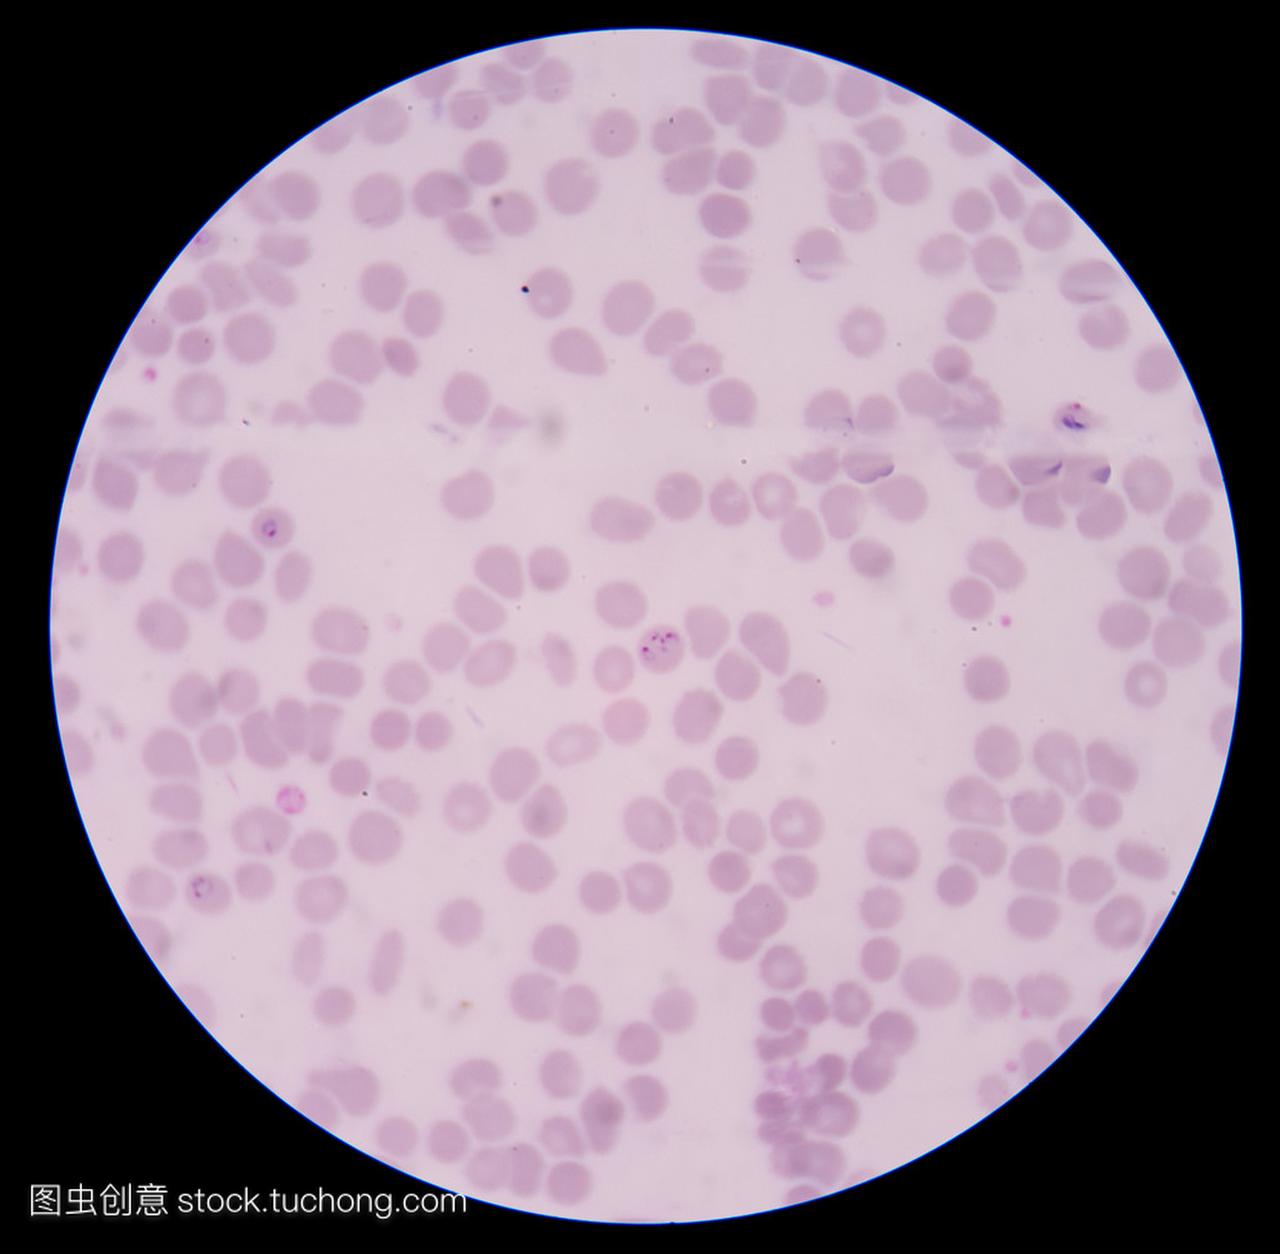 血液涂片: 疟疾寄生虫: 疟原虫 facifarum (工频)